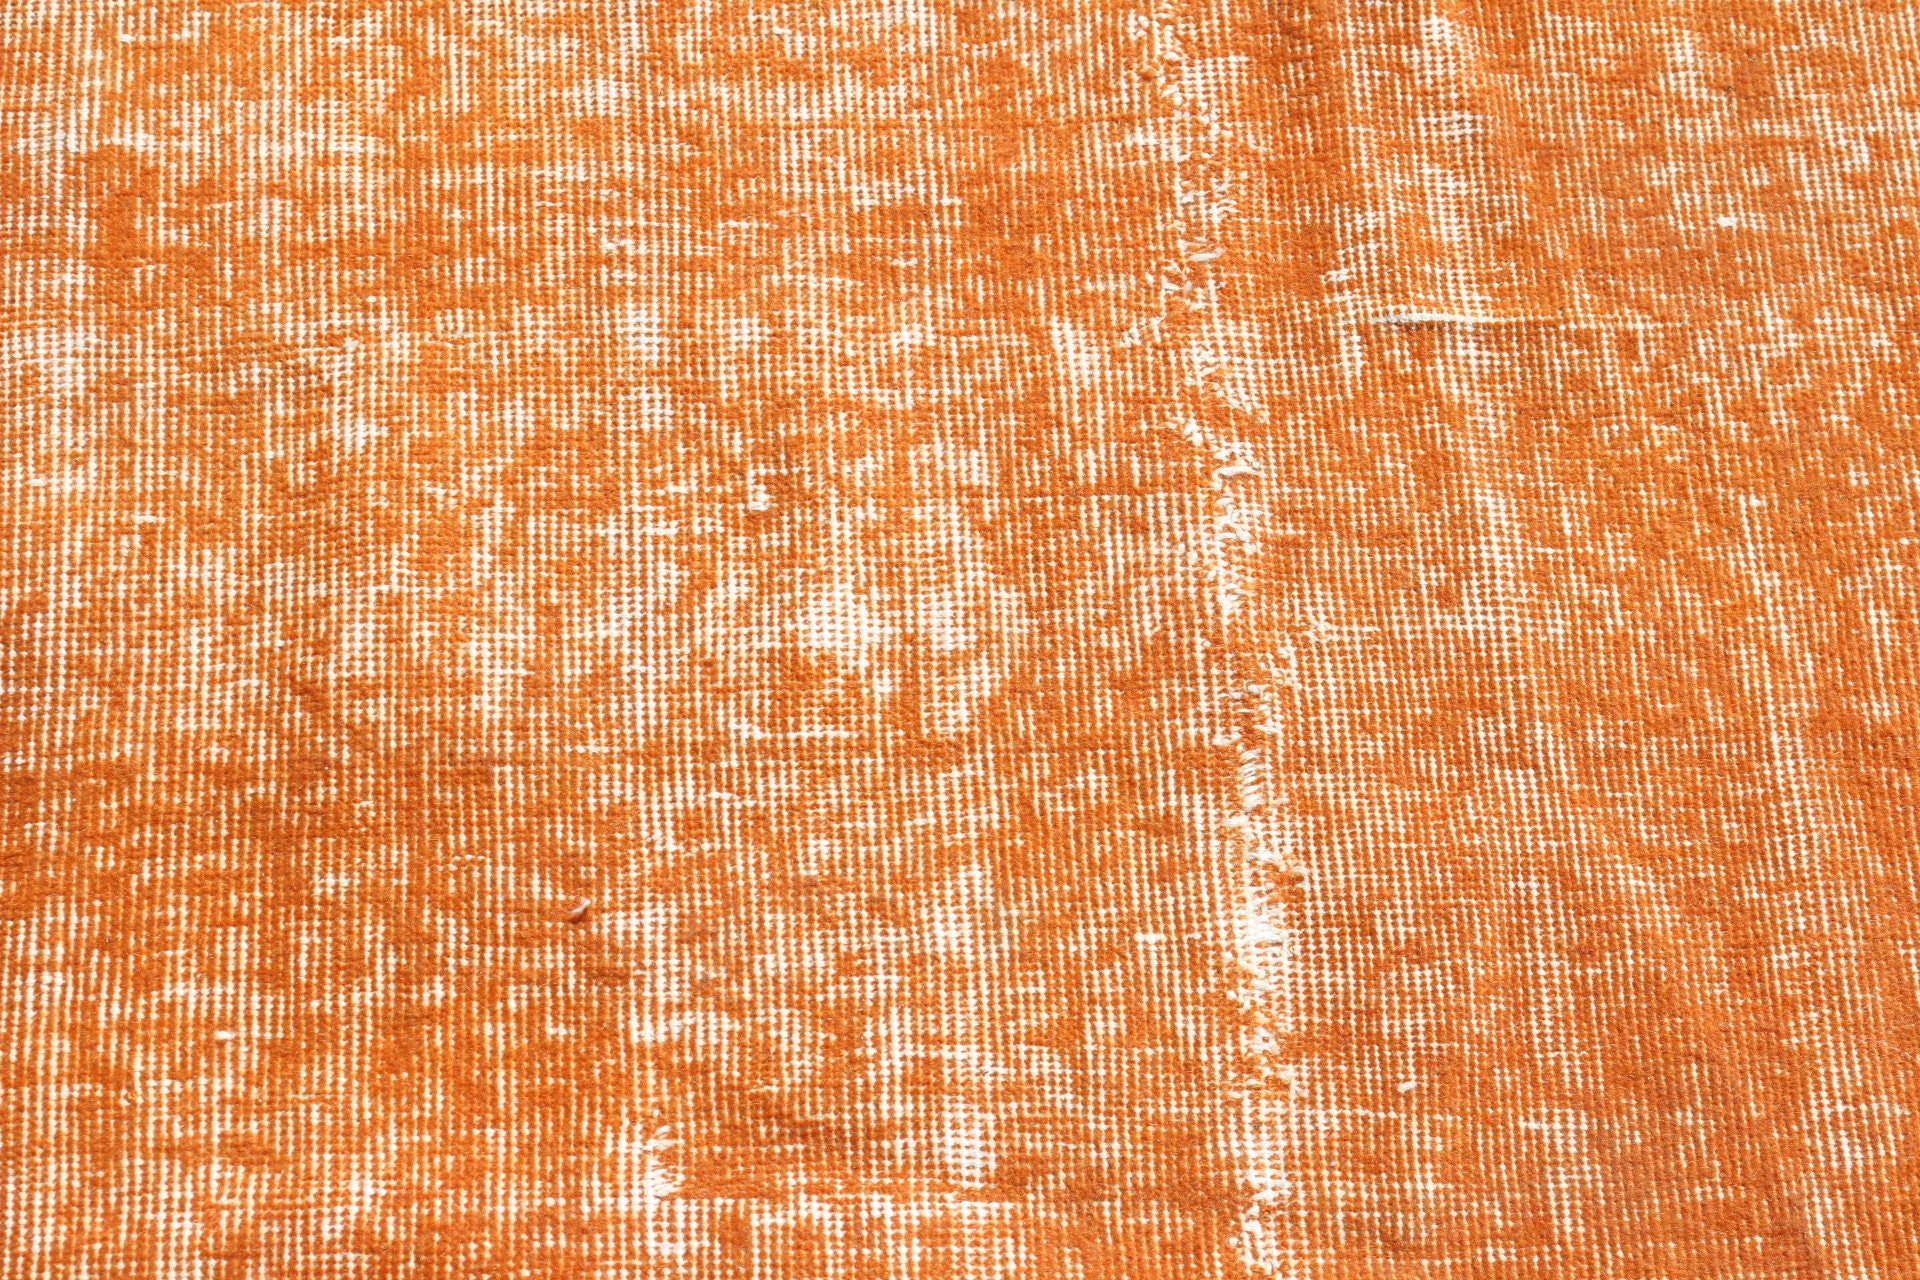 Orange Wool Rug, Handmade Rug, Bathroom Rugs, Home Decor Rug, 3.6x3.5 ft Small Rug, Vintage Rugs, Wool Rug, Turkish Rugs, Rugs for Door Mat